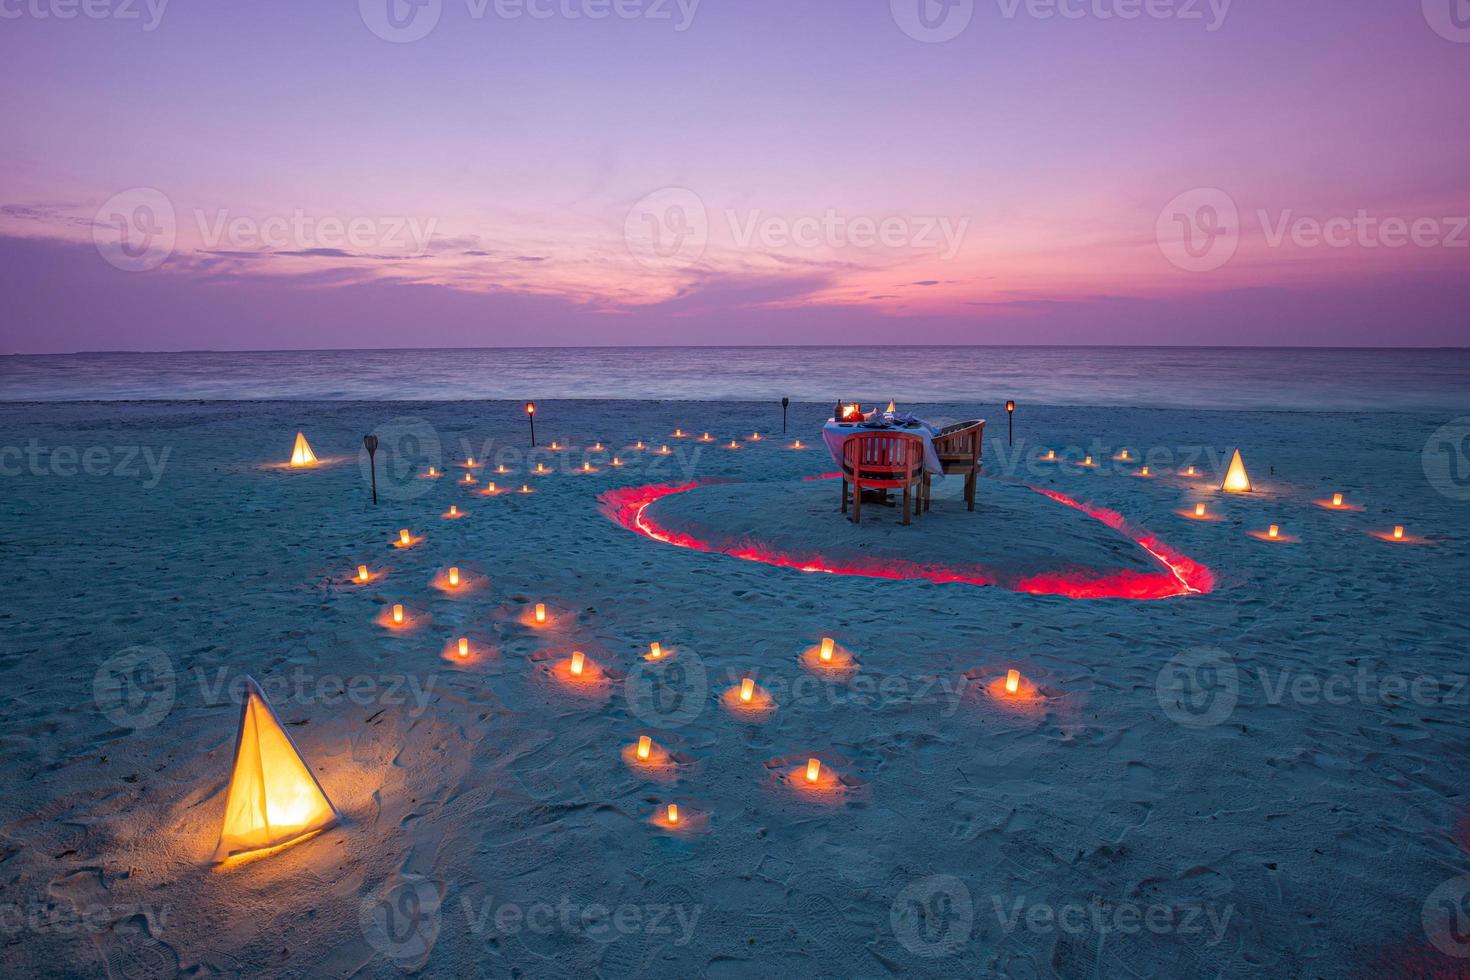 mooie tafel voor een romantische maaltijd op het strand met lantaarns en stoelen en bloemen met kaarsen en lucht en zee op de achtergrond. diner op het strand bij zonsondergang foto